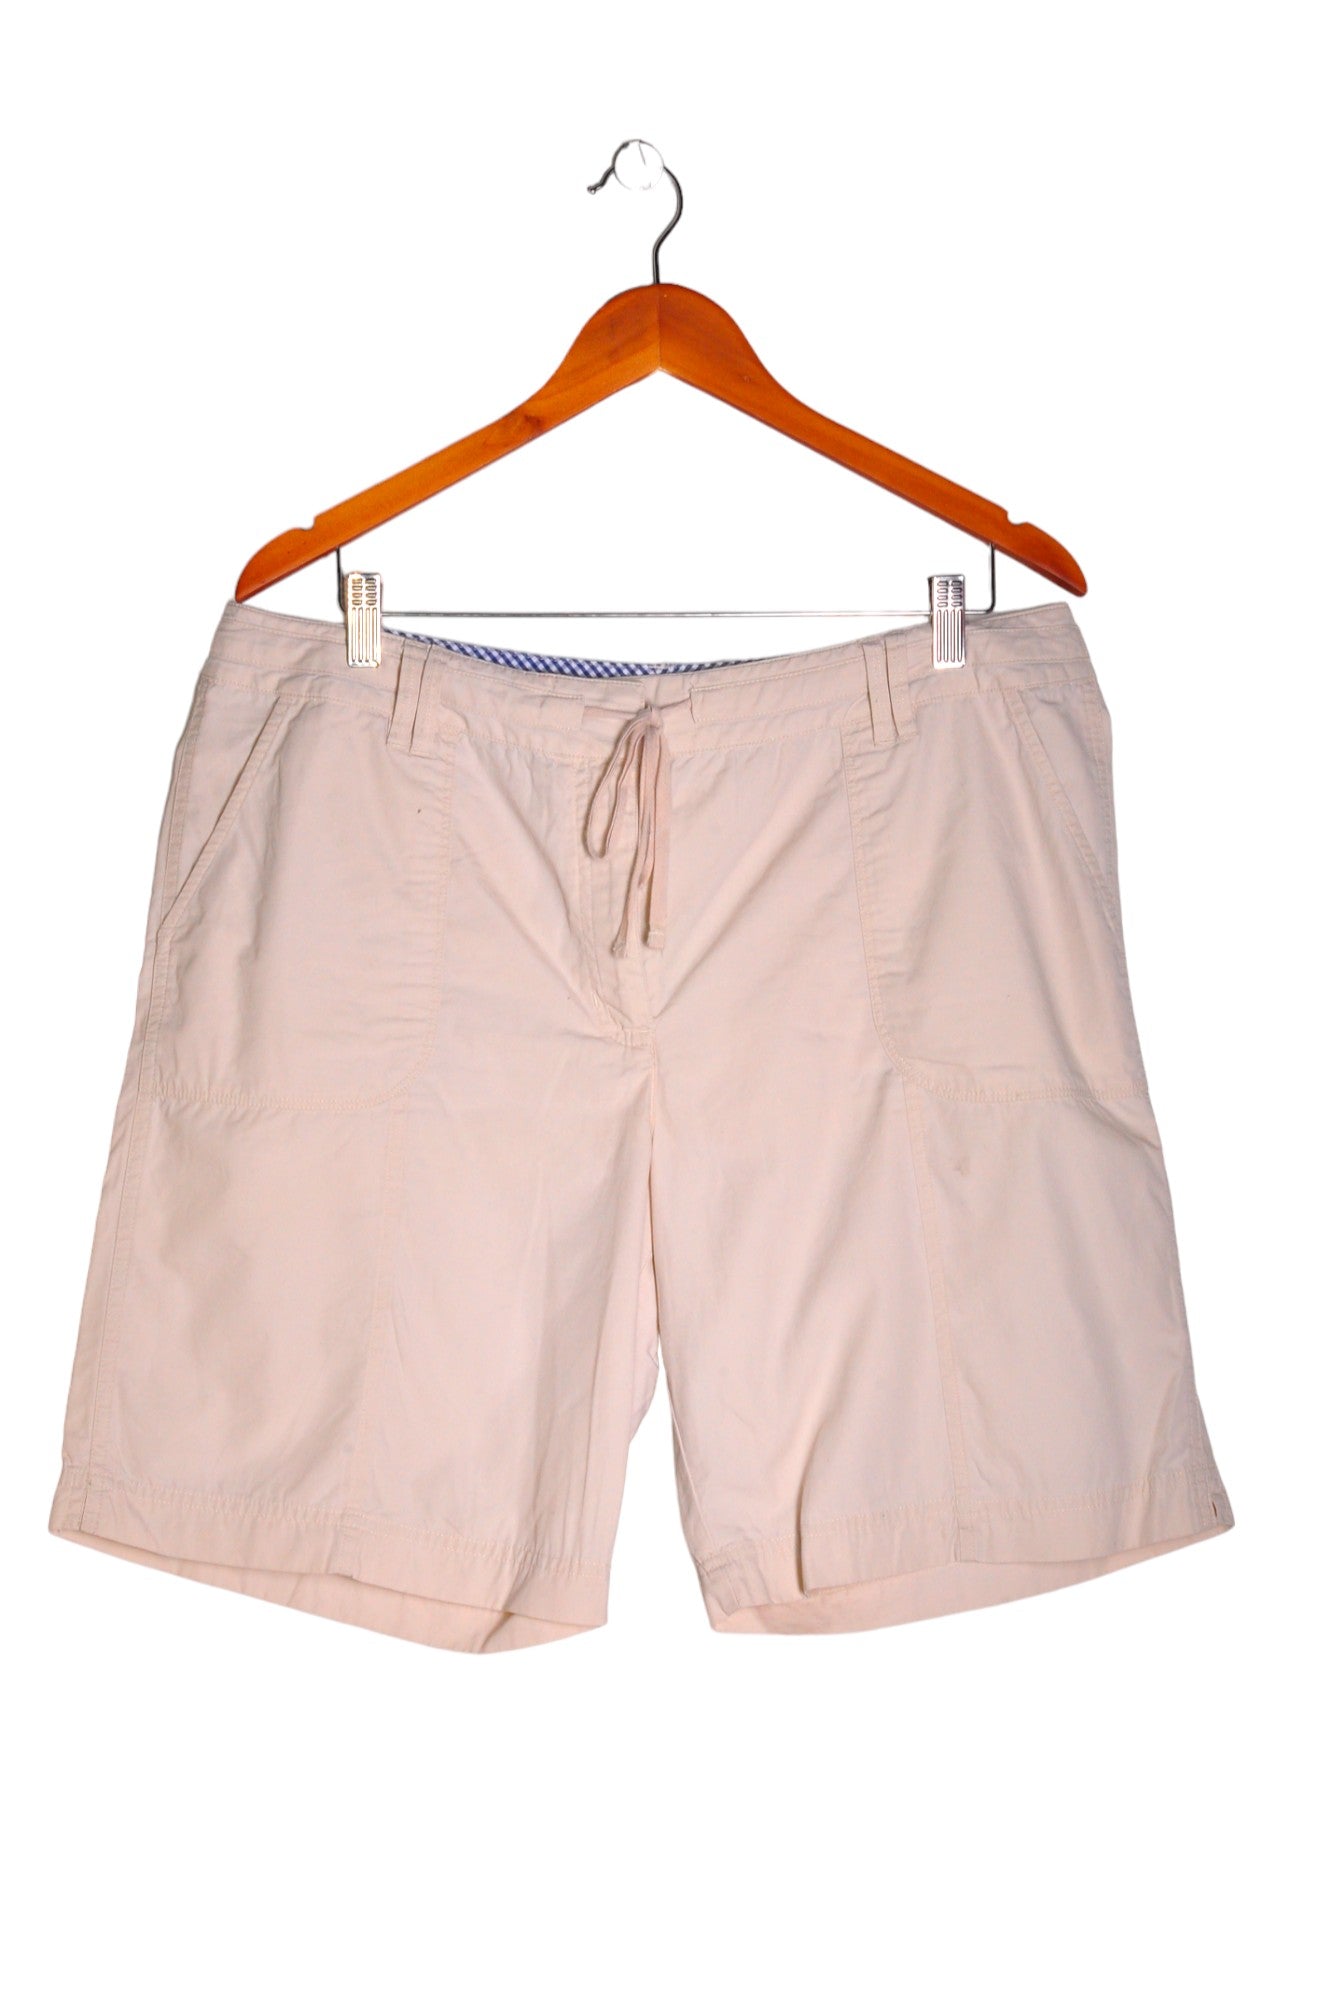 VAN HEUSEN Men Classic Shorts Regular fit in Beige - Size 4 | 17.19 $ KOOP